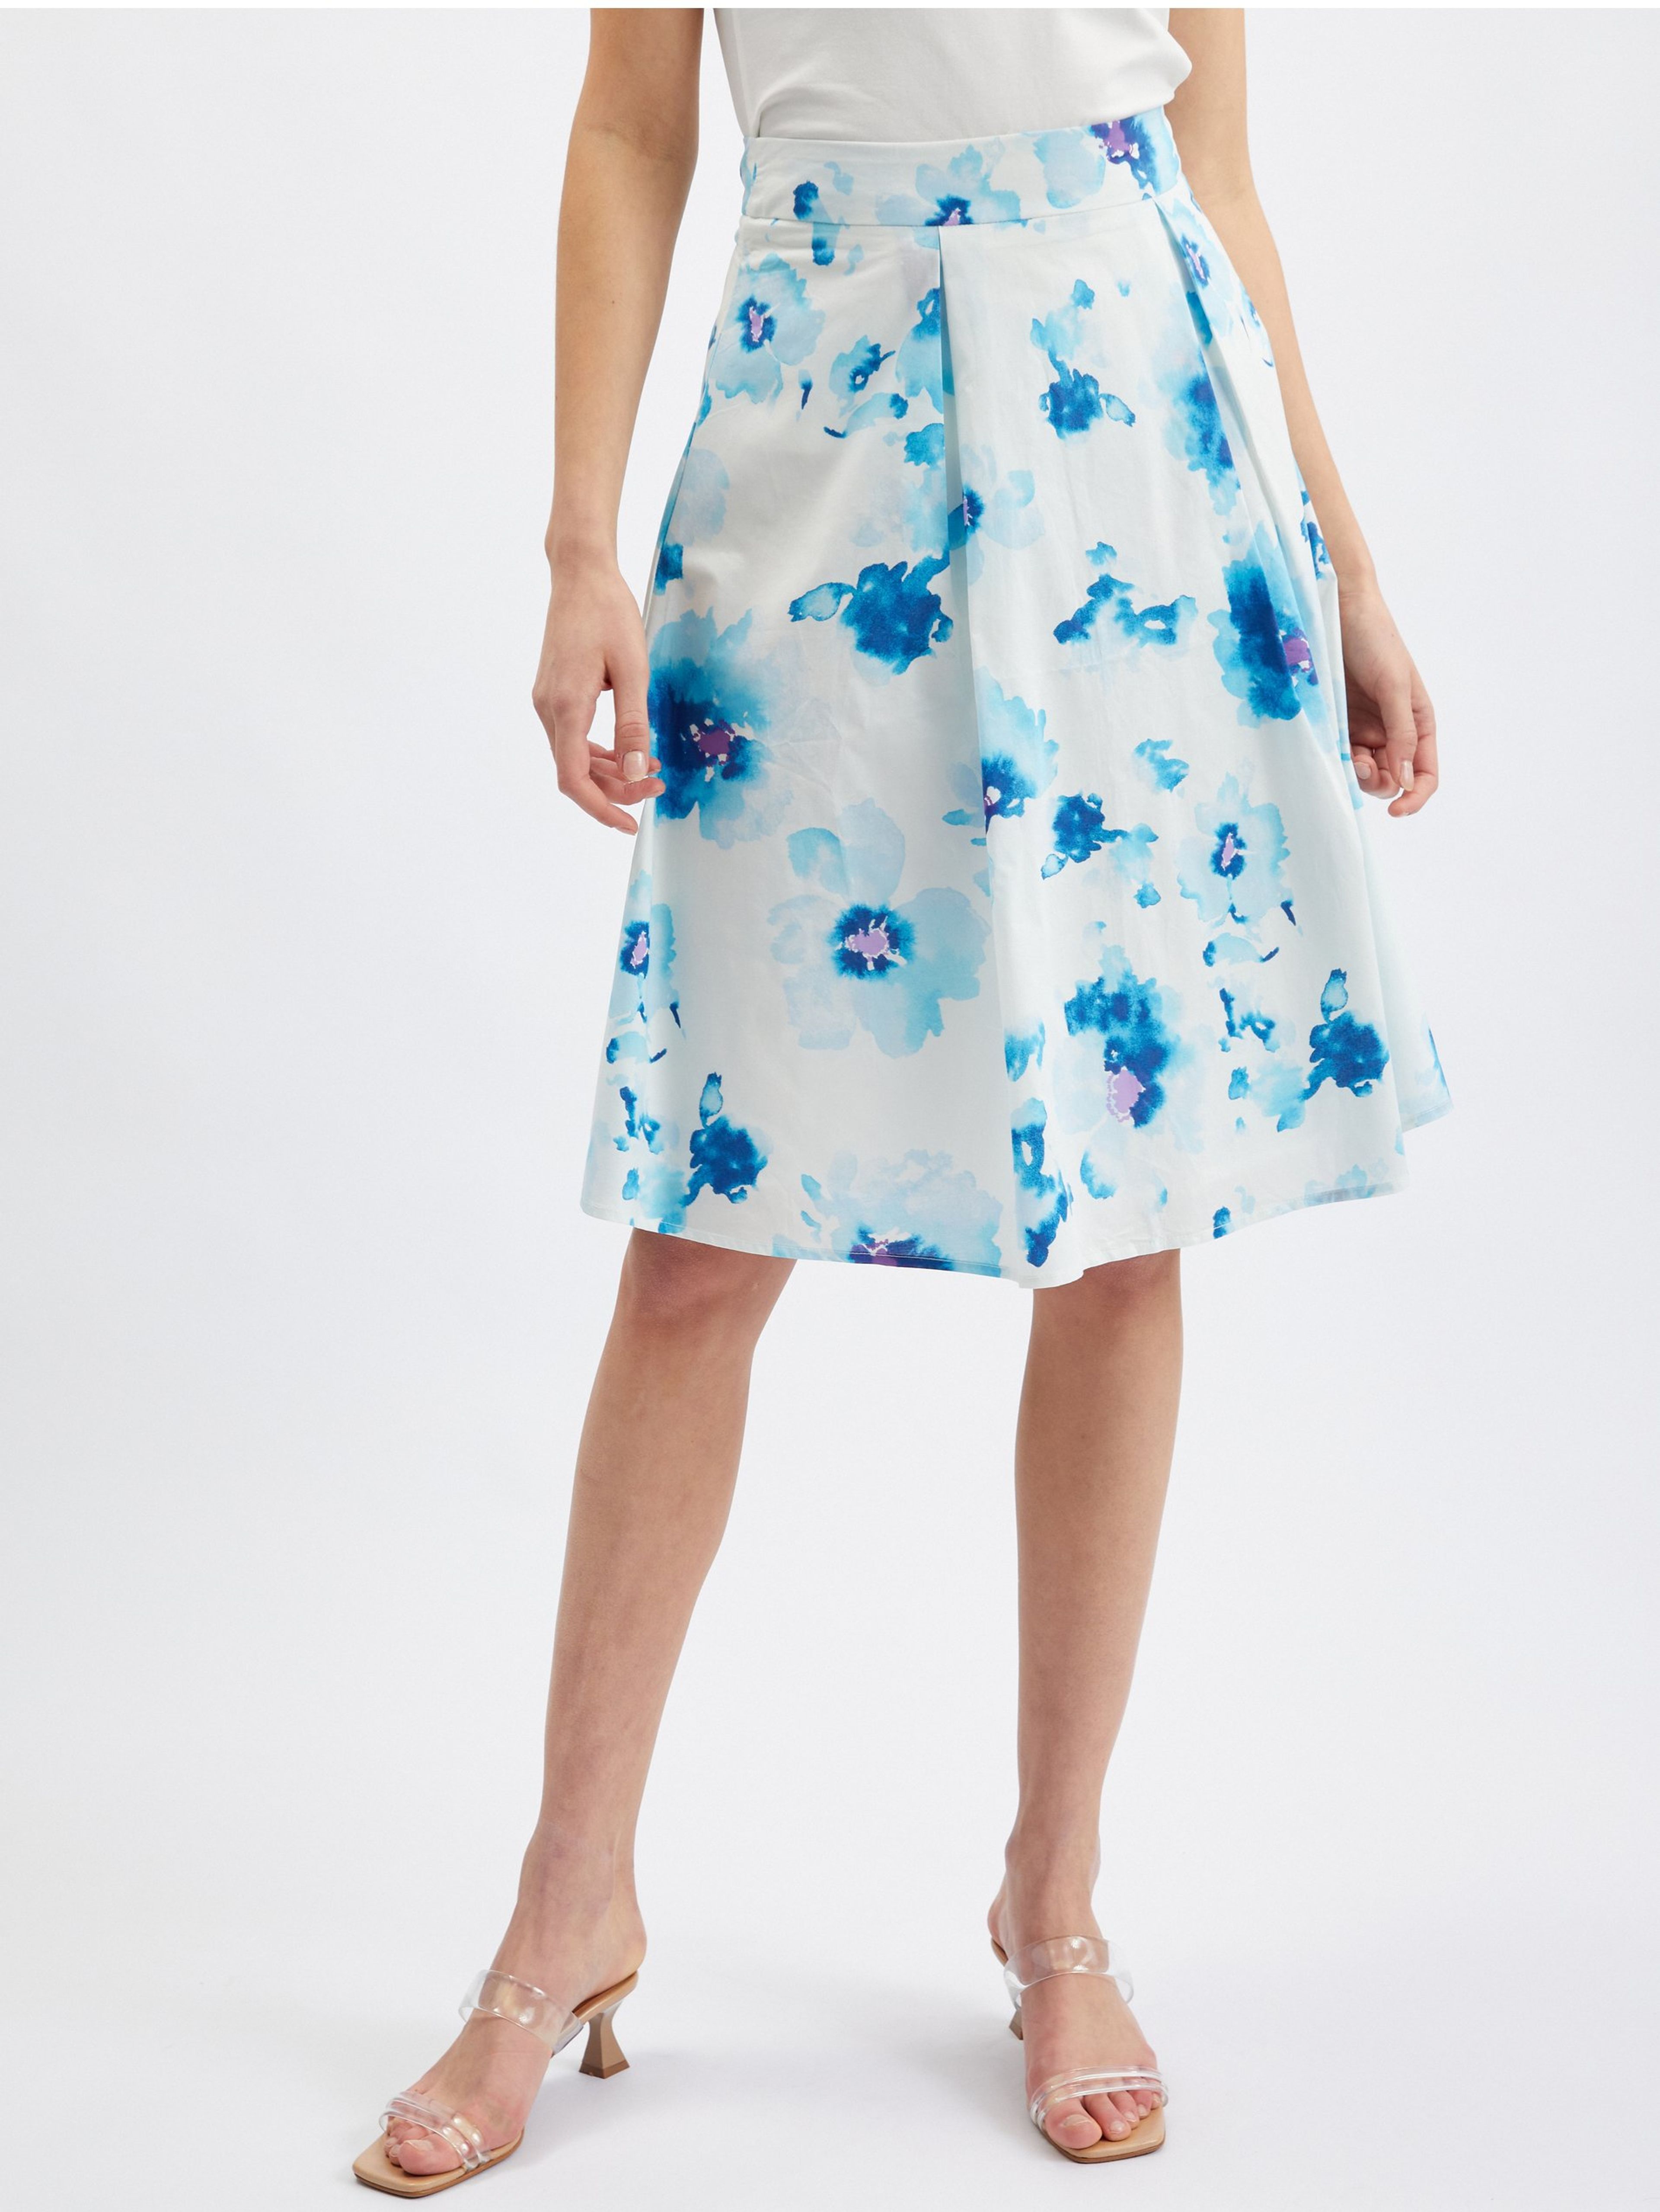 Modro-bílá dámská květovaná sukně ORSAY